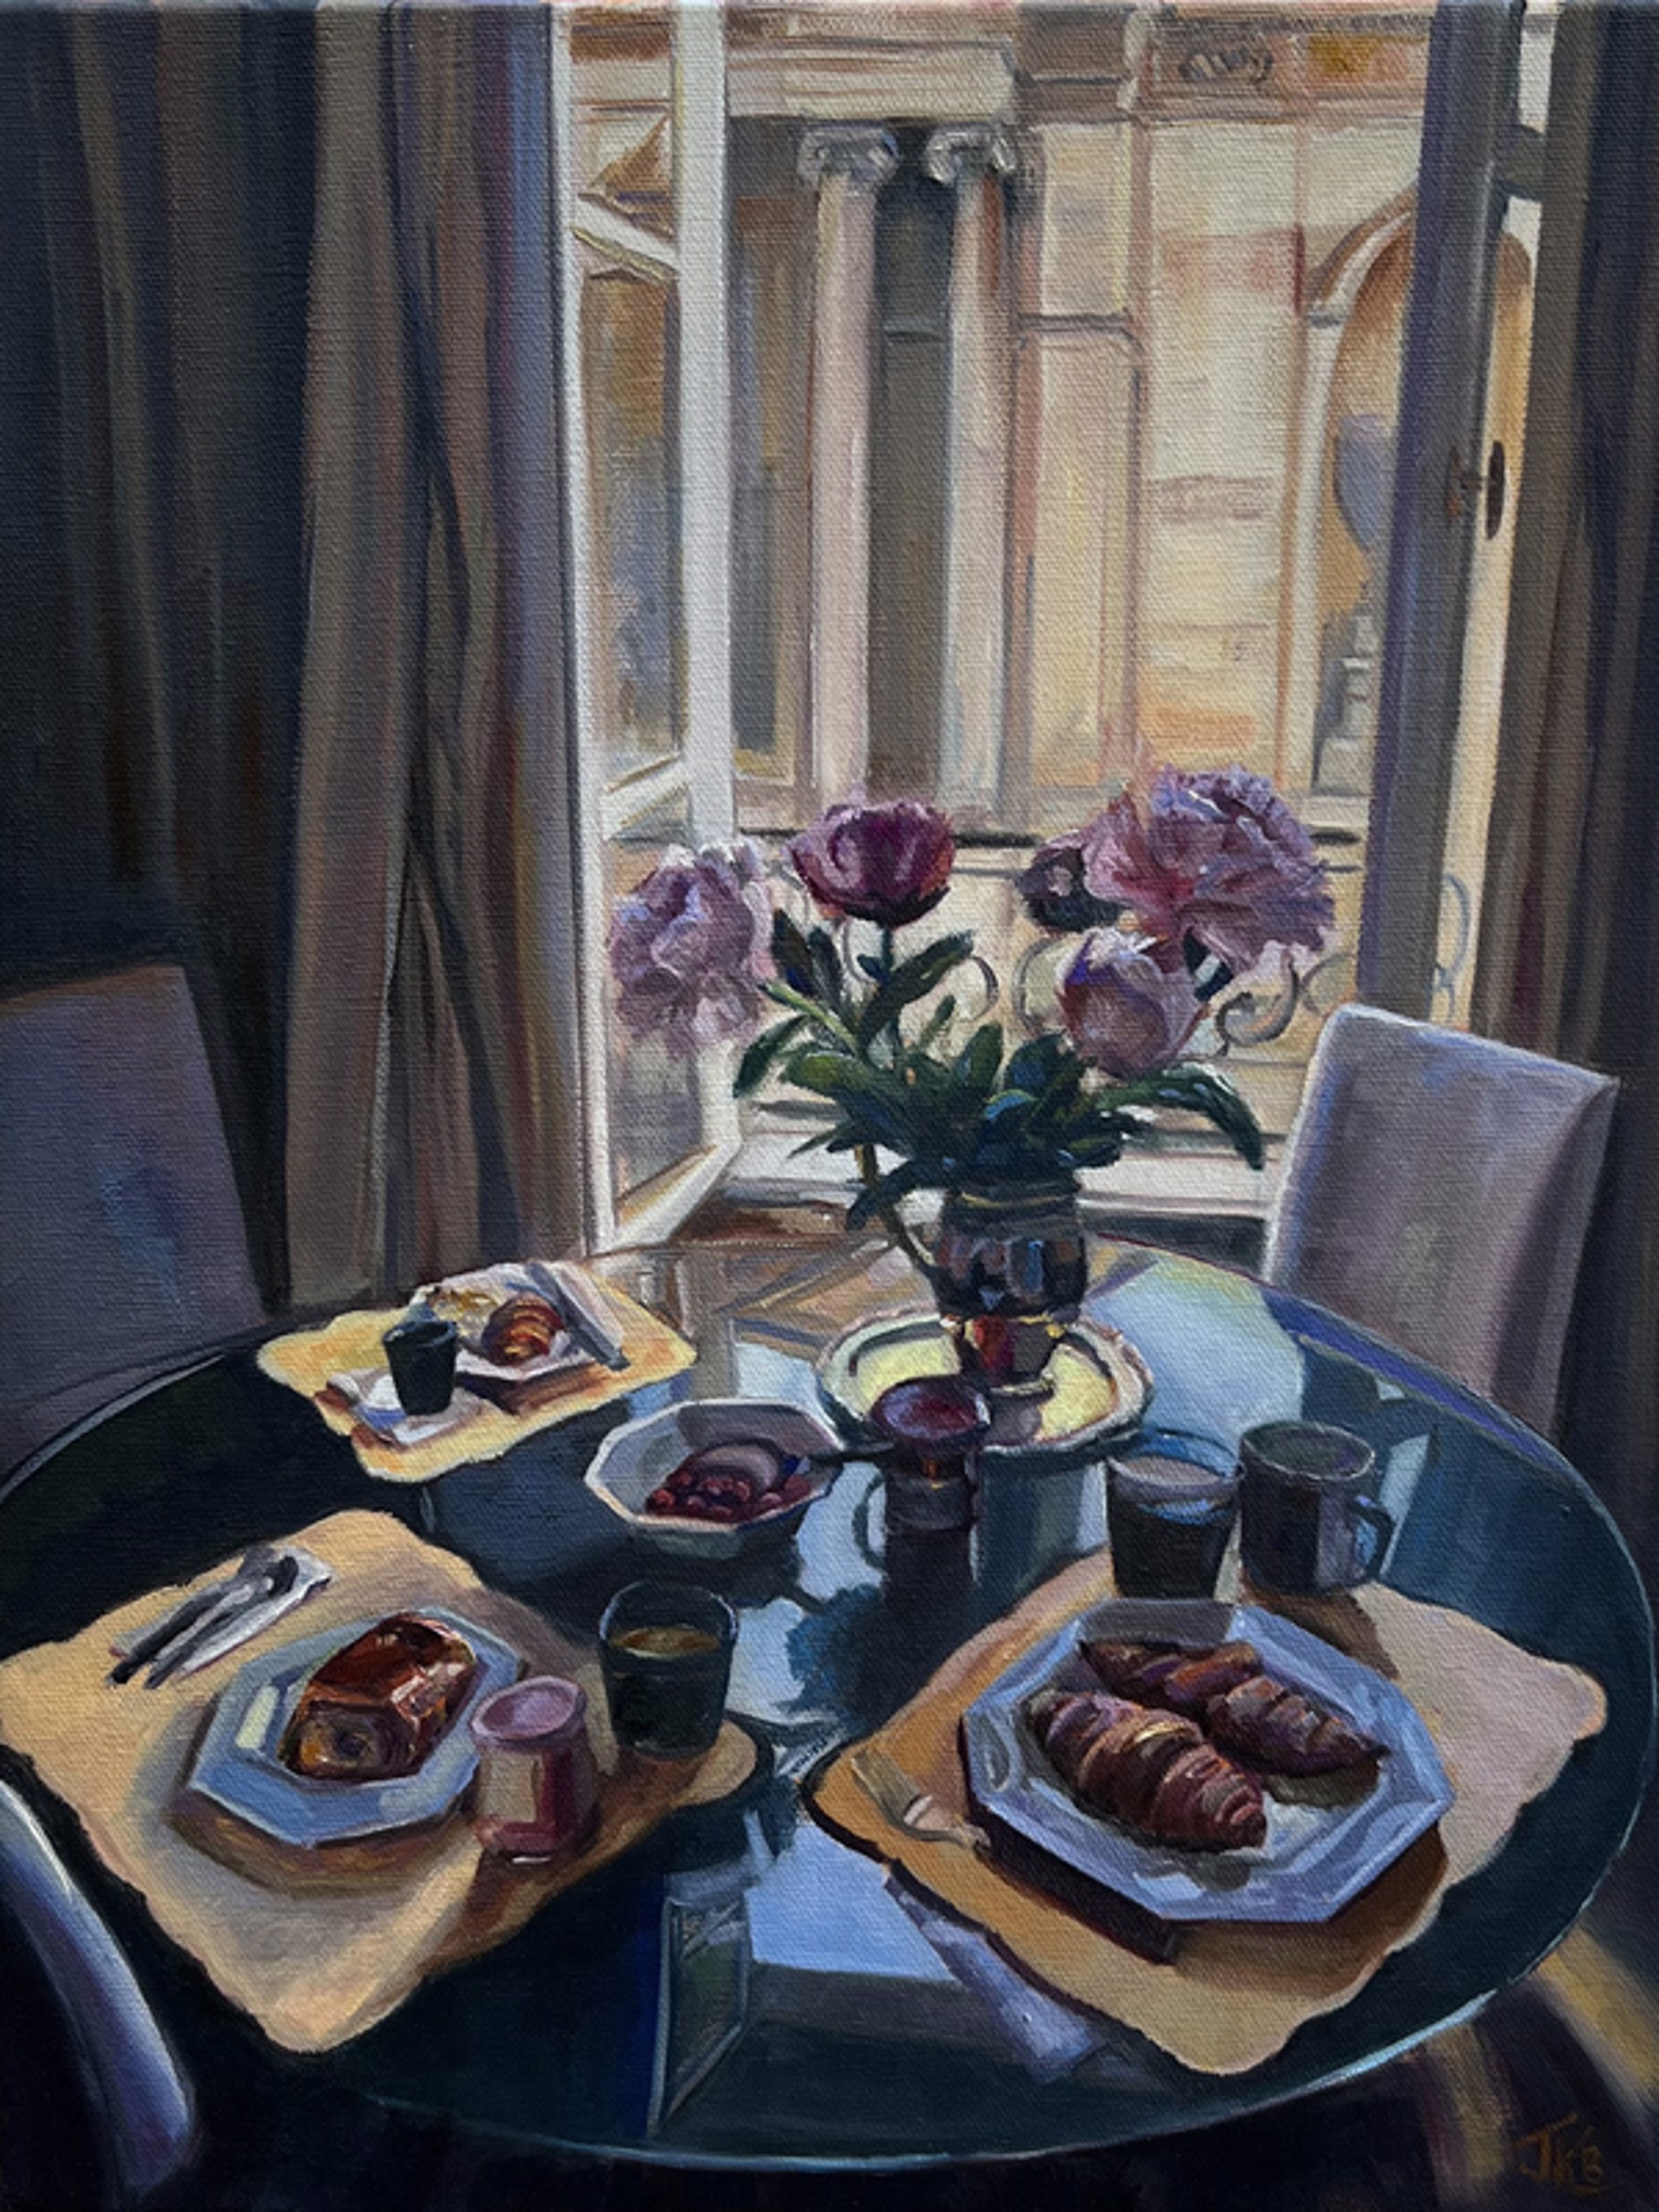 Breakfast in Paris by Jennifer Barlow